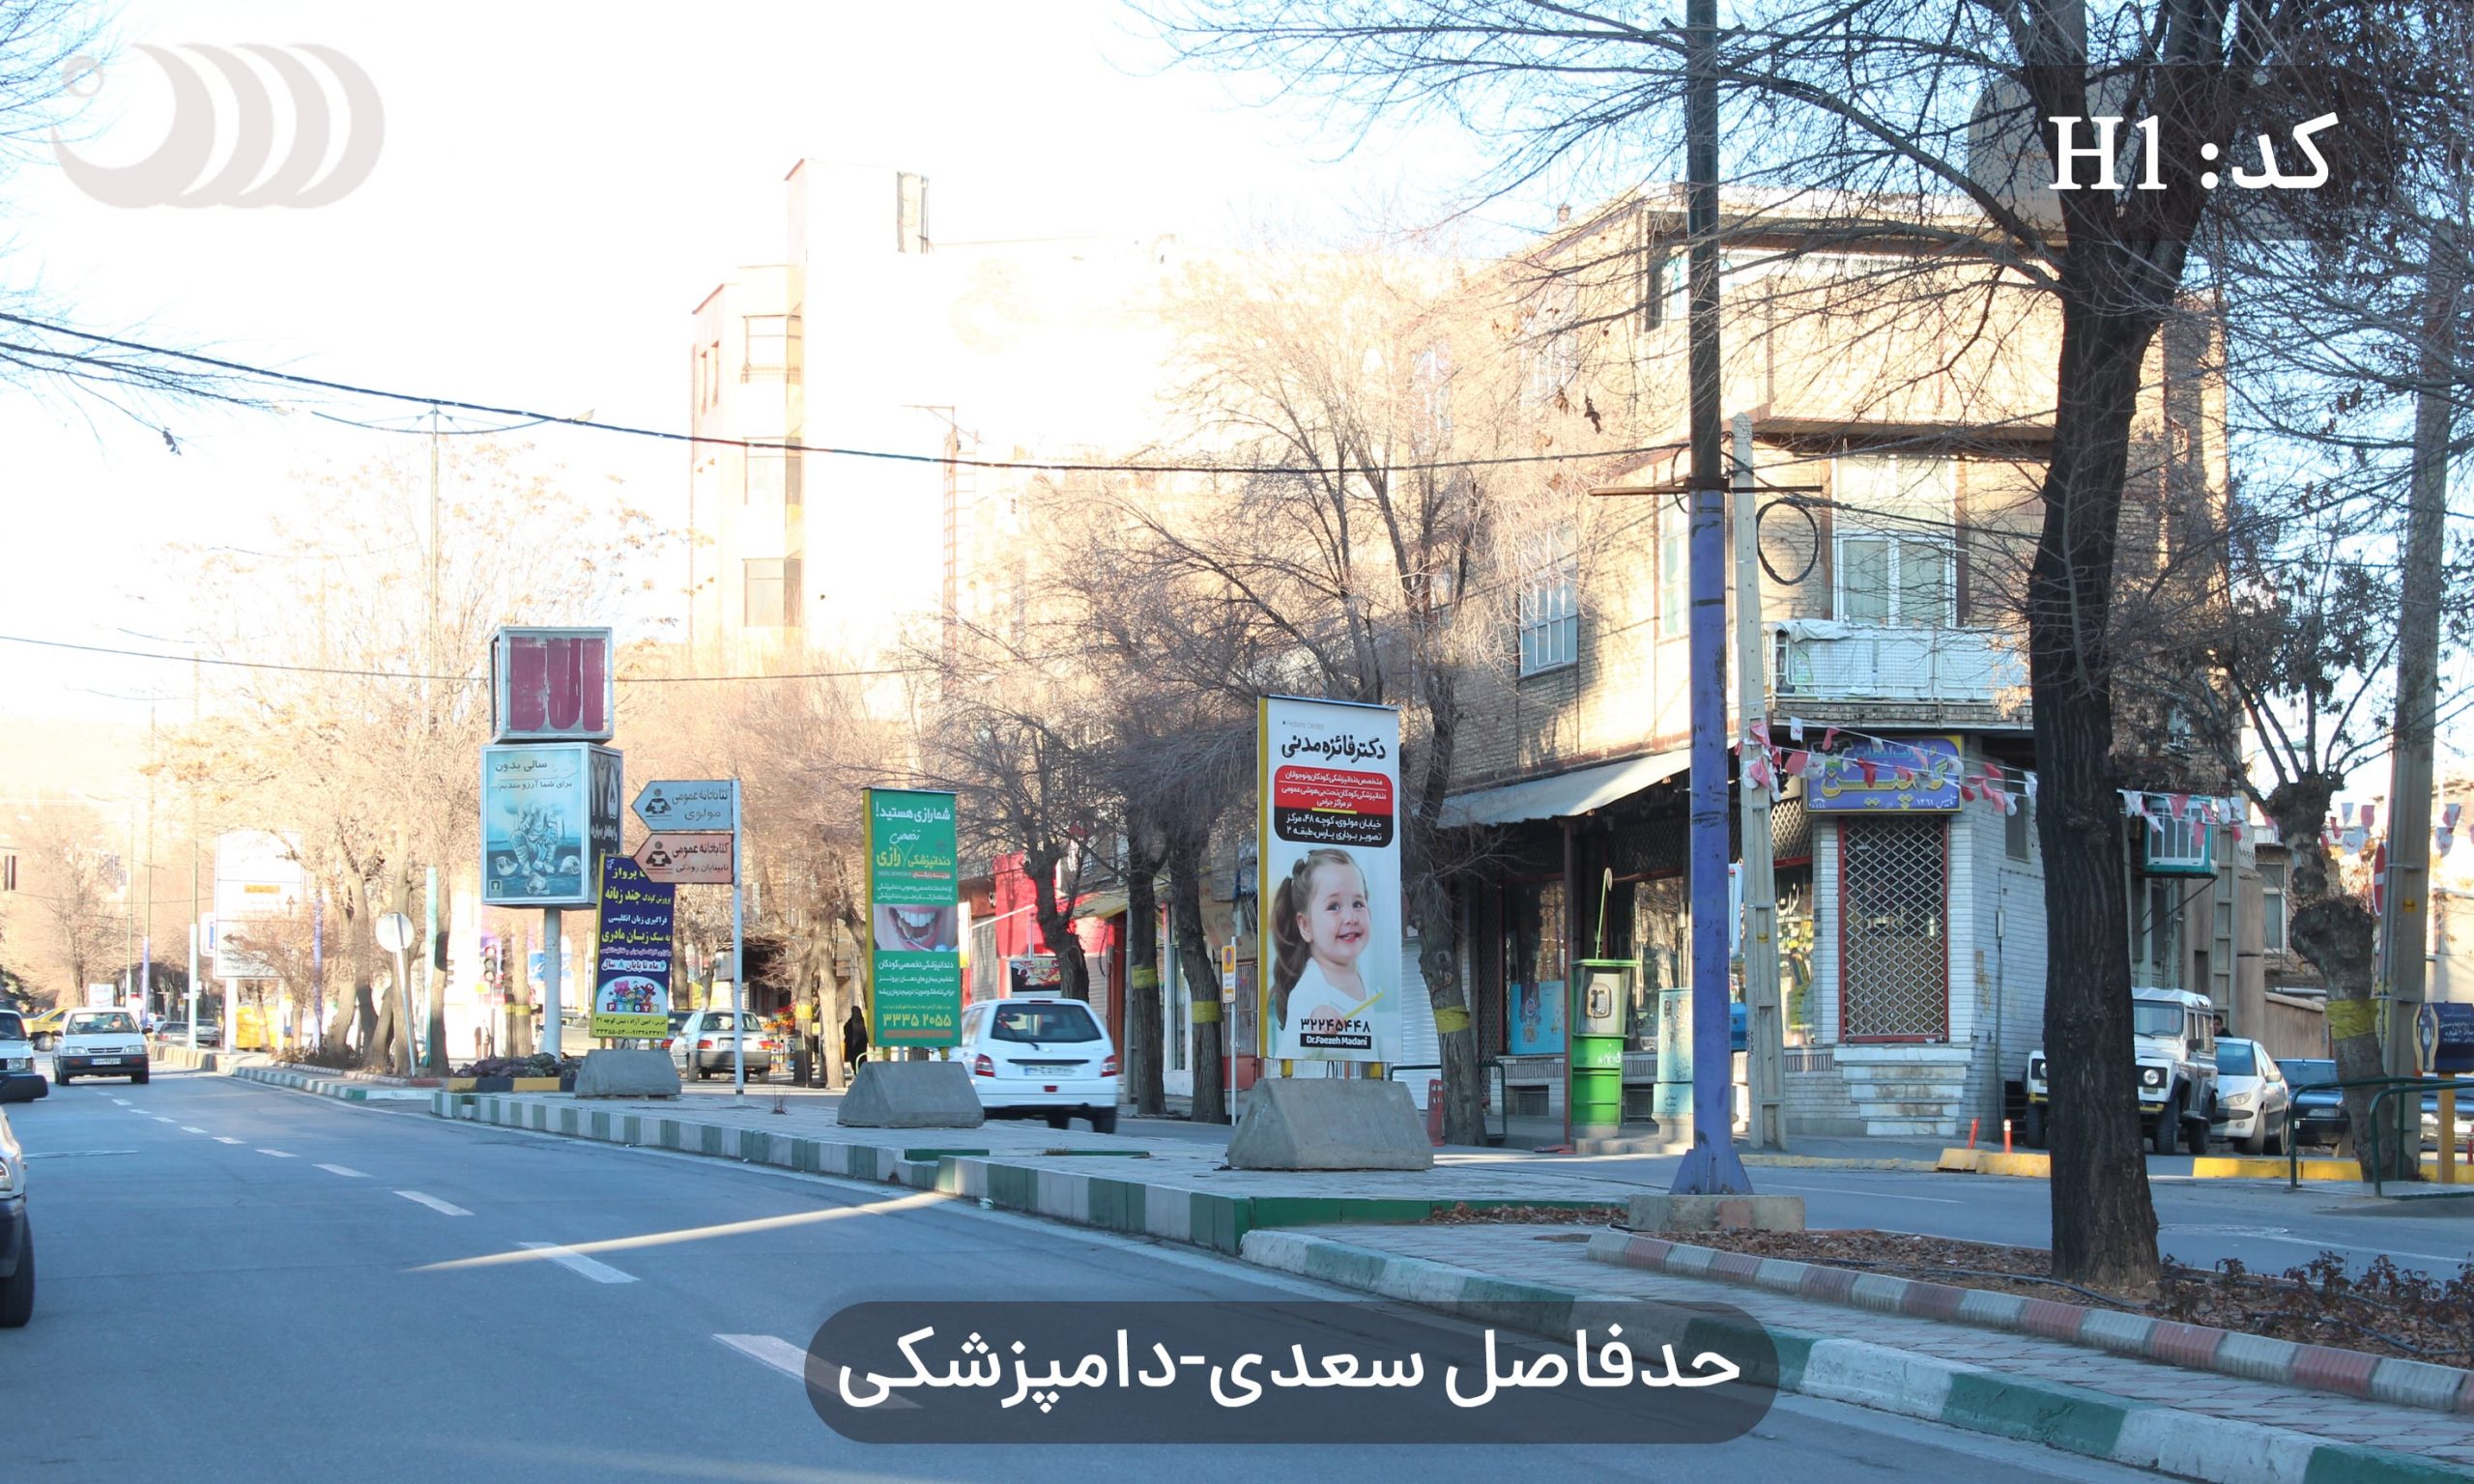 بلوار حافظ- حدفاصل چهاراره سعدی و دامپزشکی